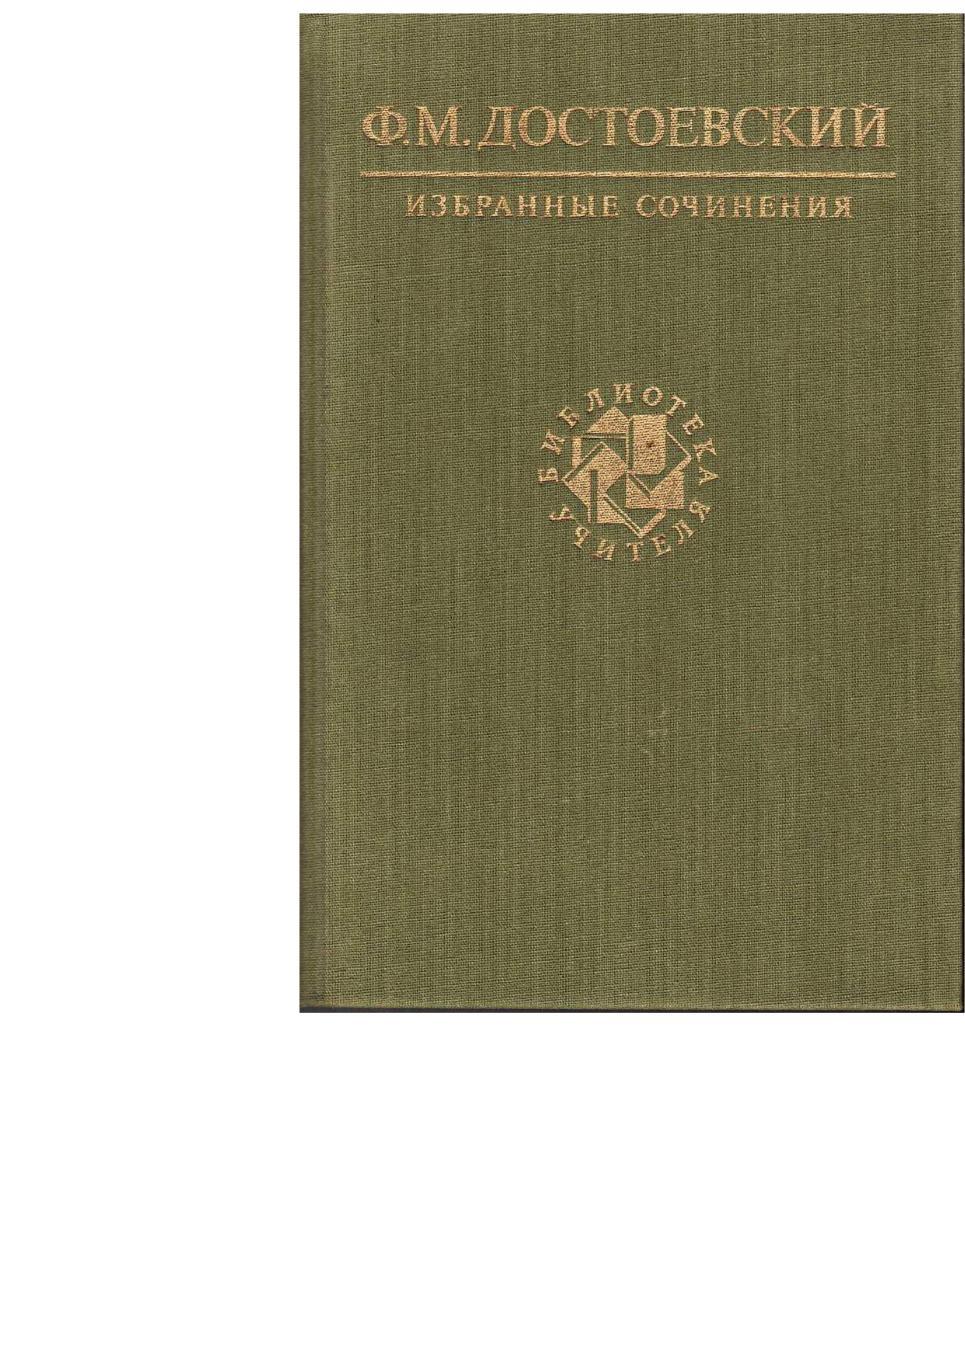 Достоевский Ф.М. Избранные сочинения. – М., 1990. Библиотека учителя.